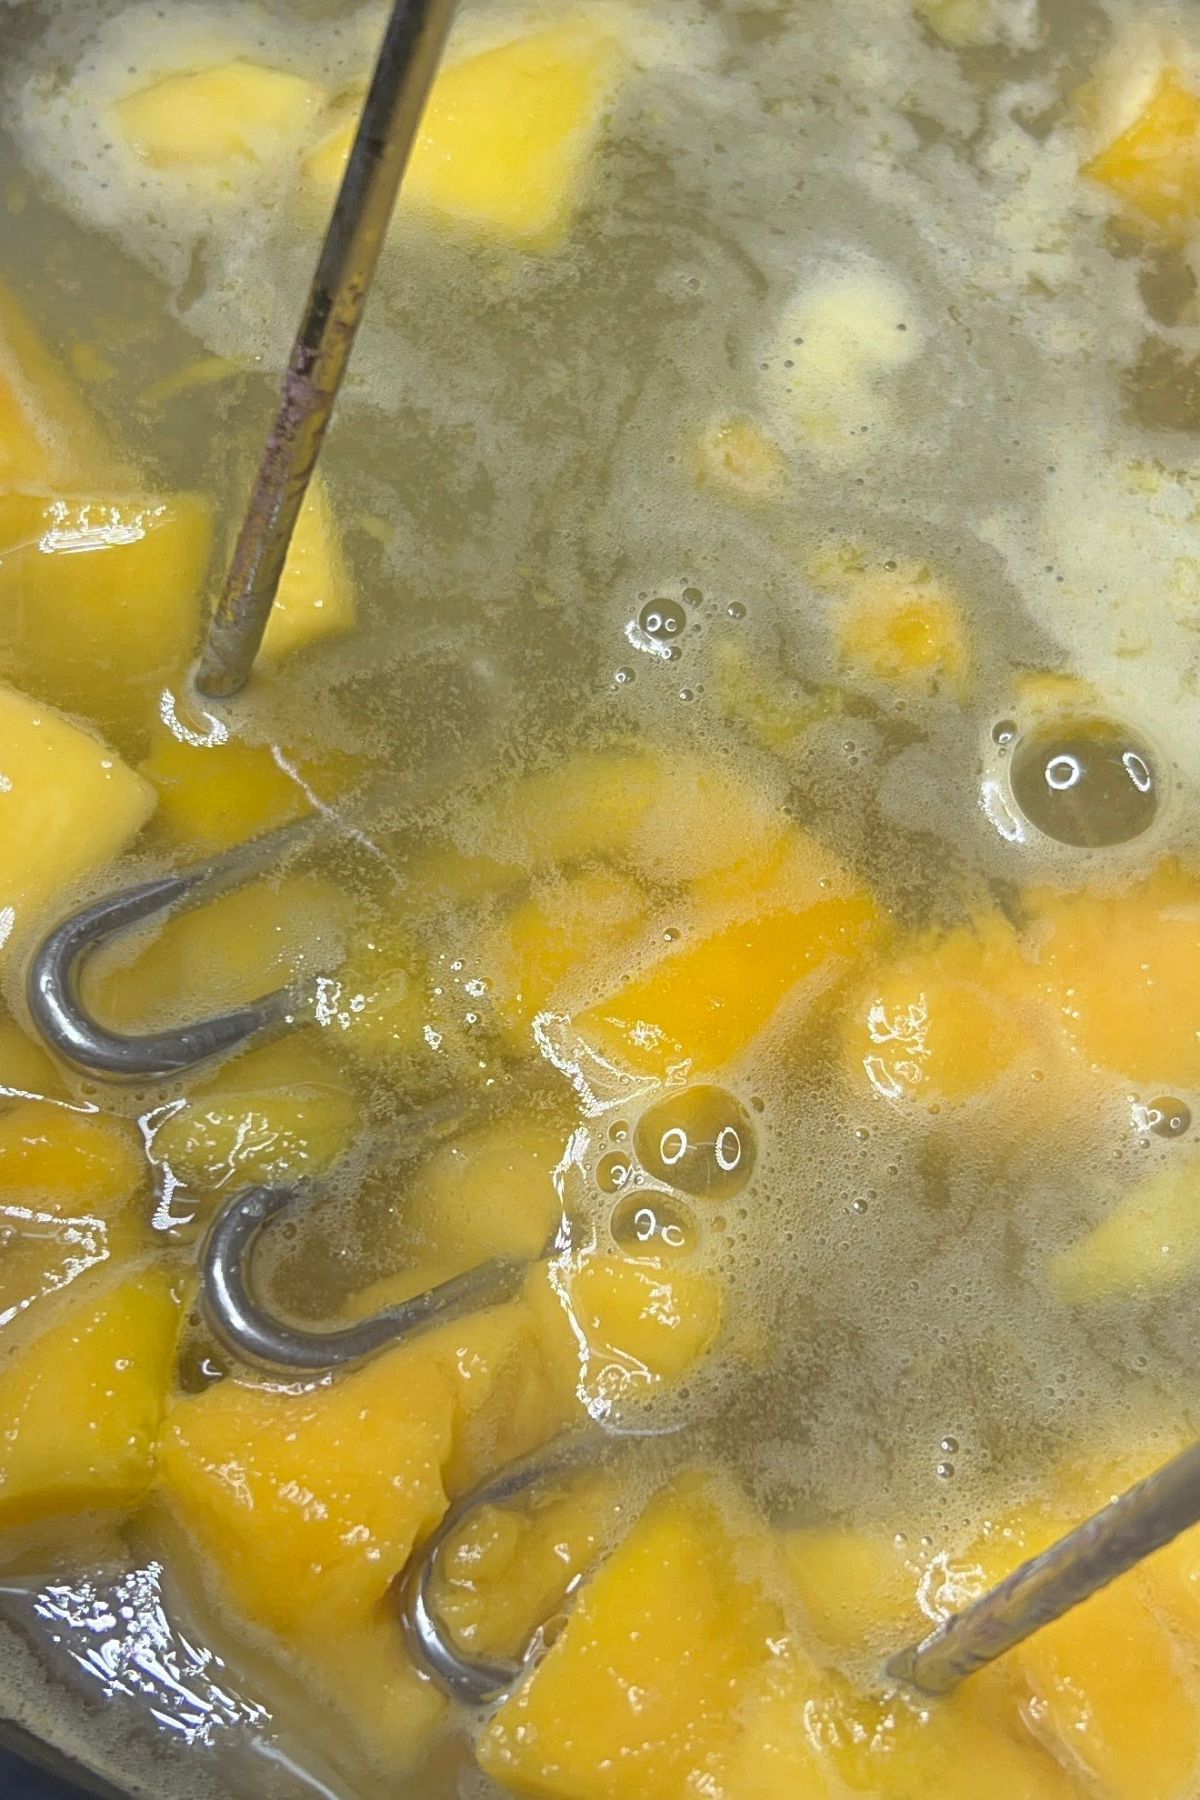 Mashing mangos in water while heating.